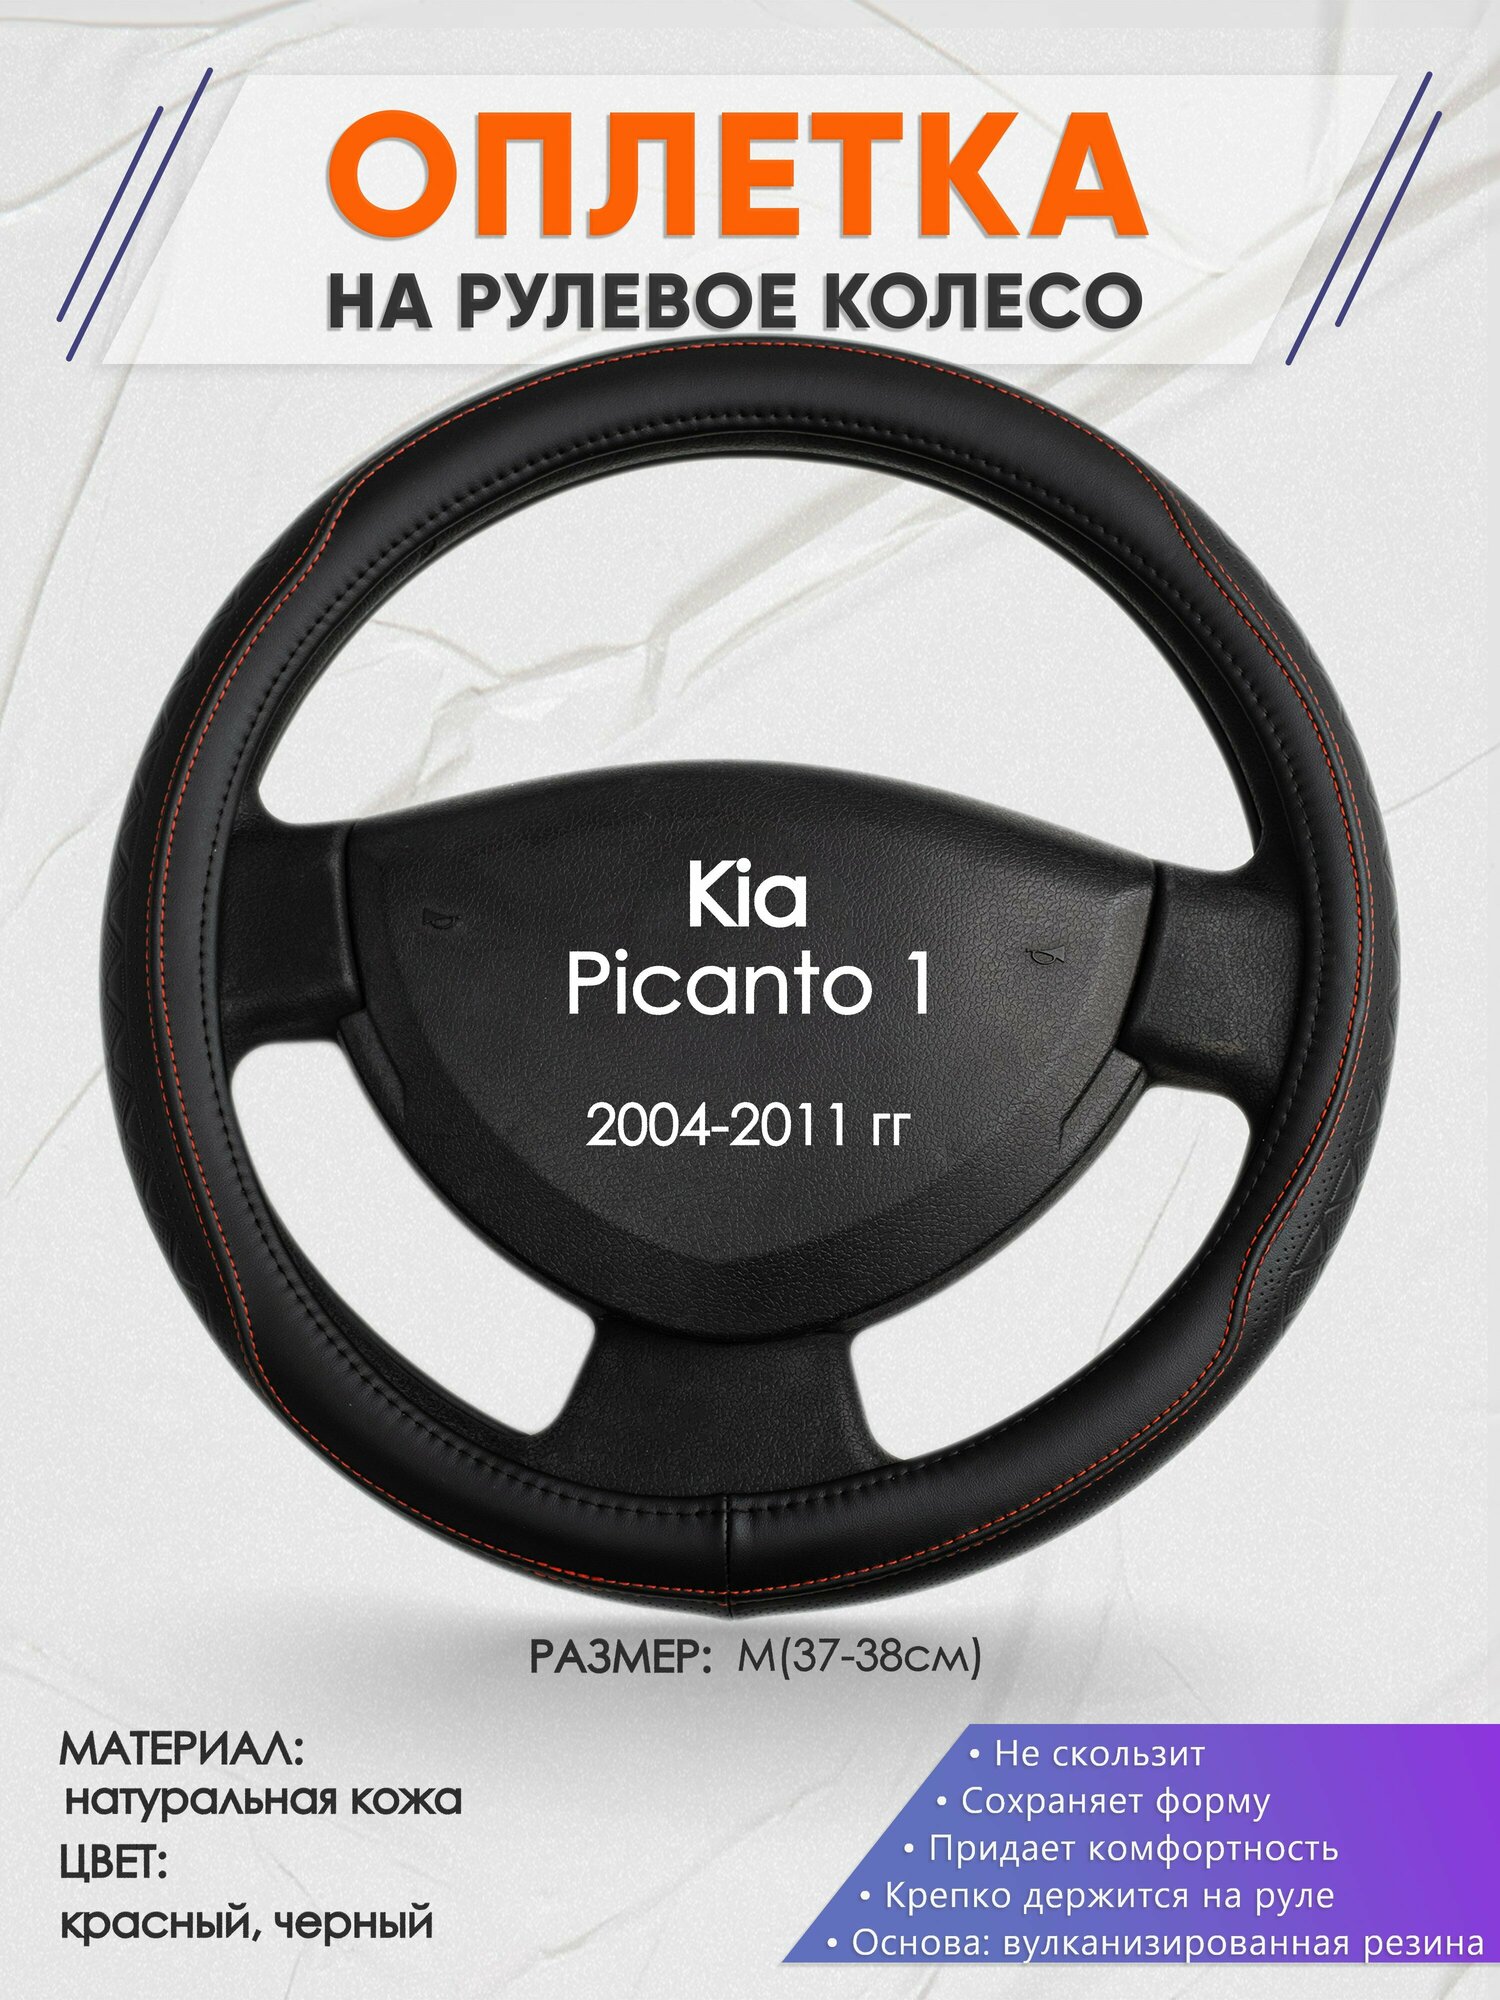 Оплетка на руль для Kia Picanto 1(Киа Пиканто 1) 2004-2011 M(37-38см) Натуральная кожа 31